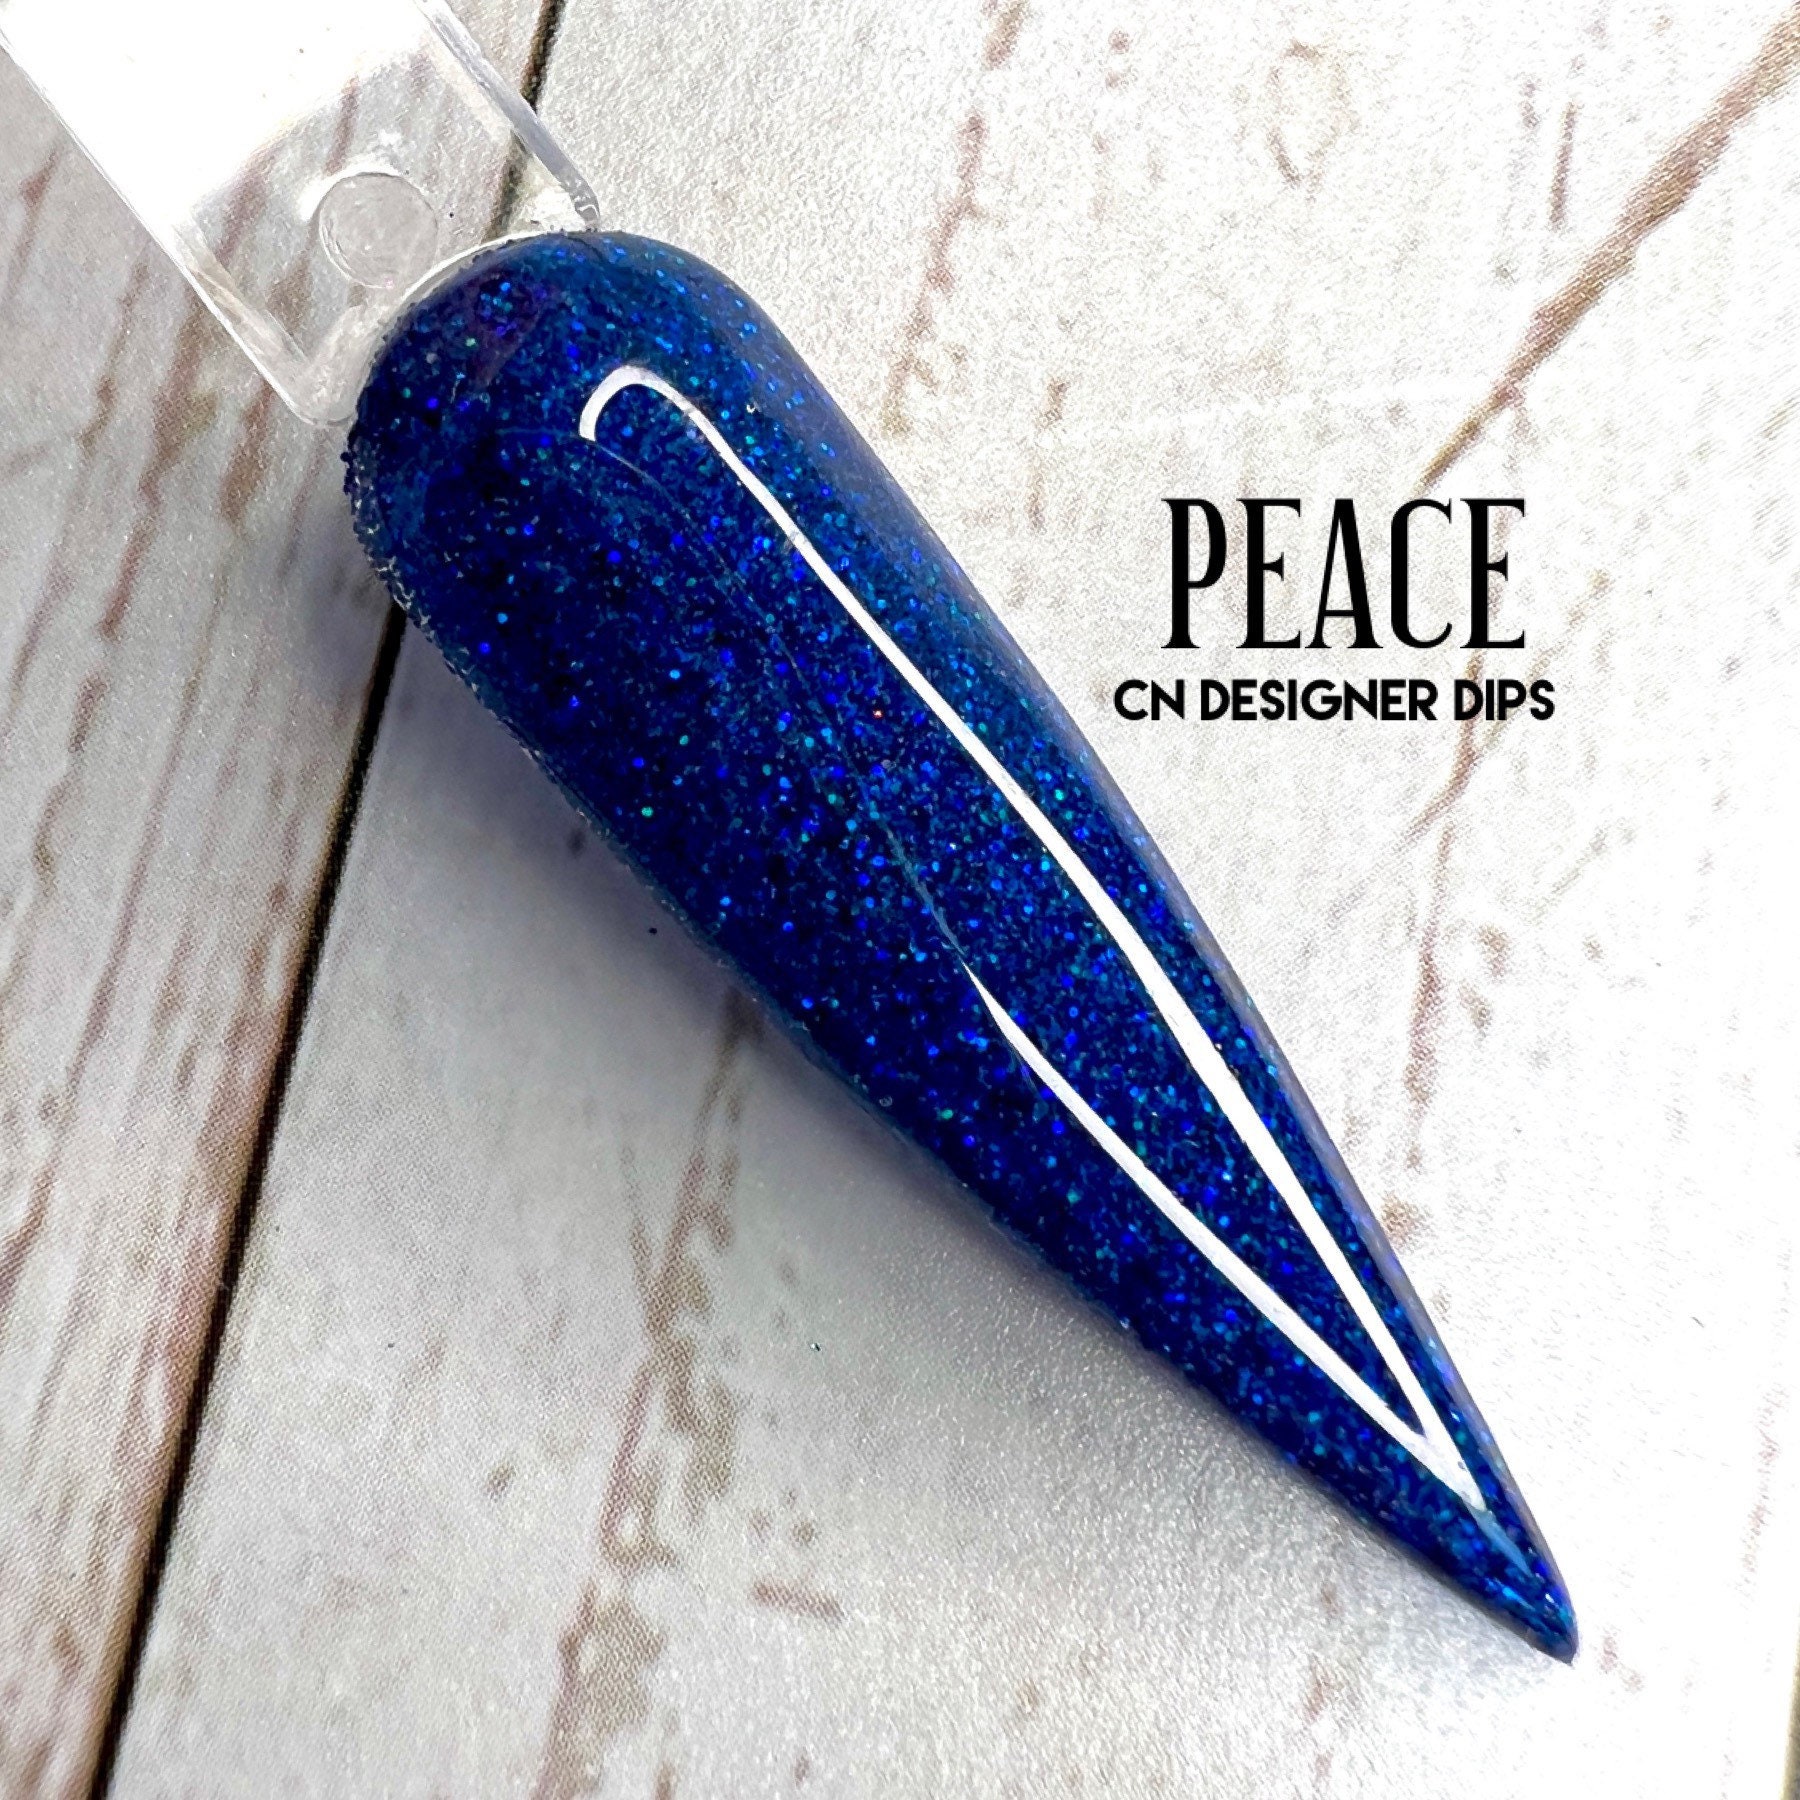 Peace - Dip-Puder, Dip-Puder Für Nägel, Acryl, Acrylpuder, Acrylfarben, Nagel, Blaues Blaue Glitter von Etsy - CNDesignerDips